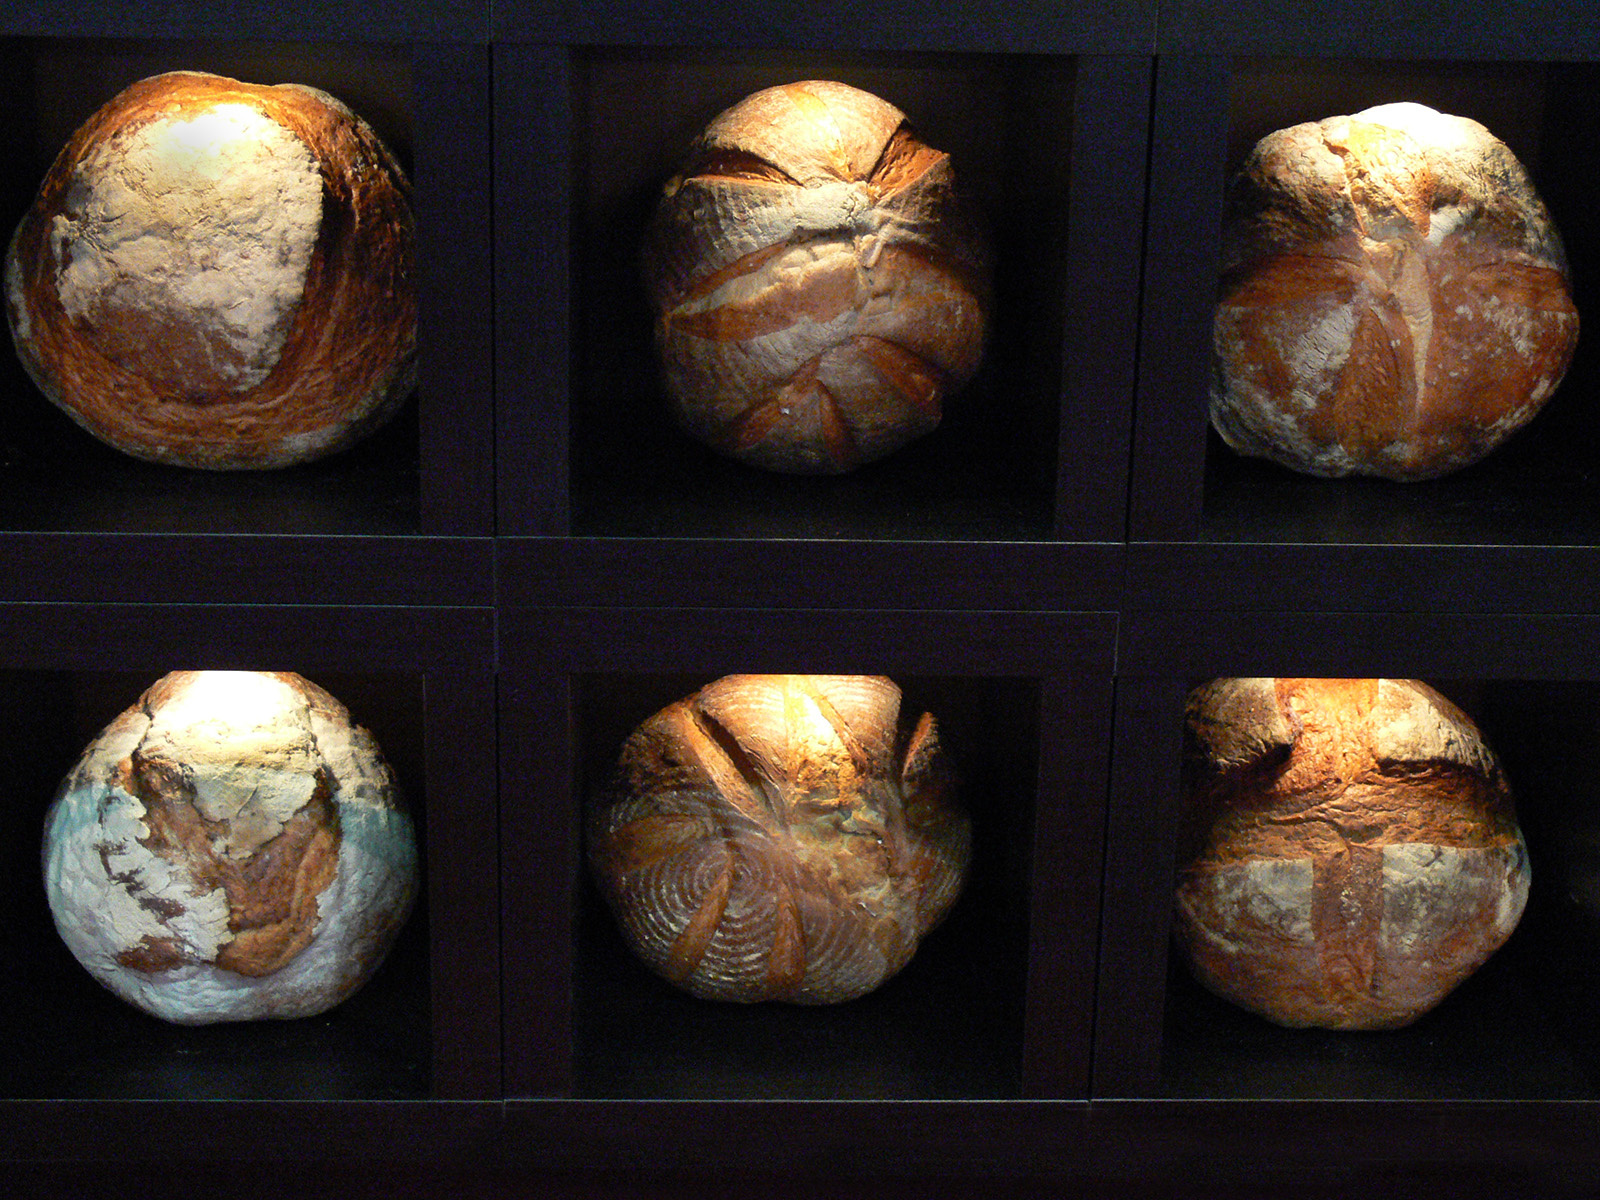 SIRHA kenyérvariációk